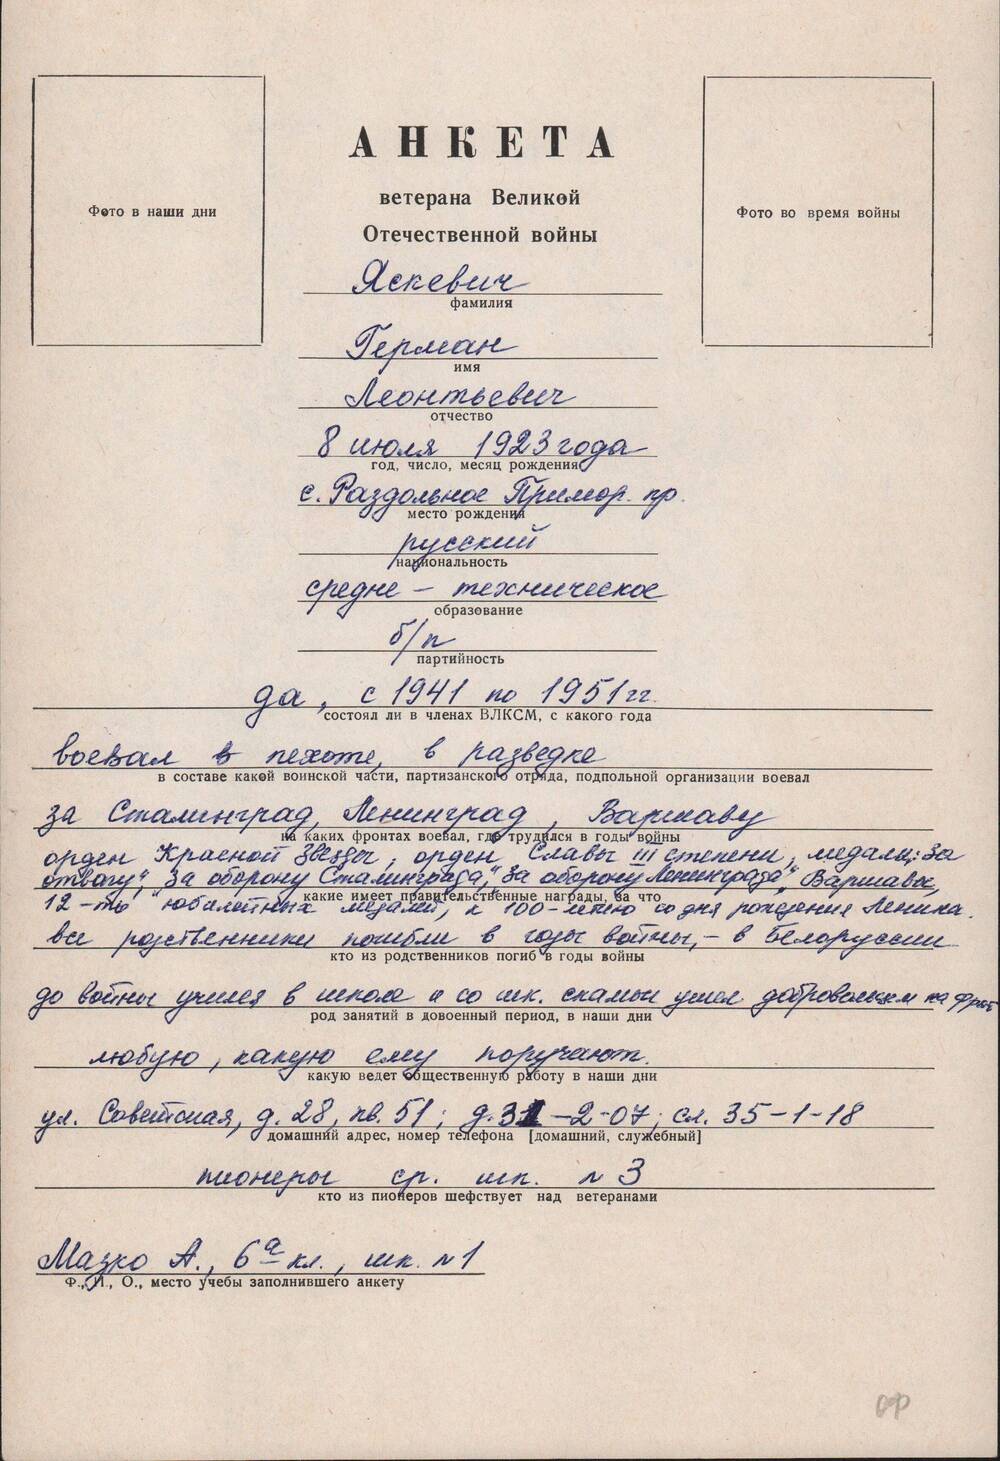 Анкета ветерана Великой Отечественной войны Яскевича Германа Леонтьевича, 1923 г.р.